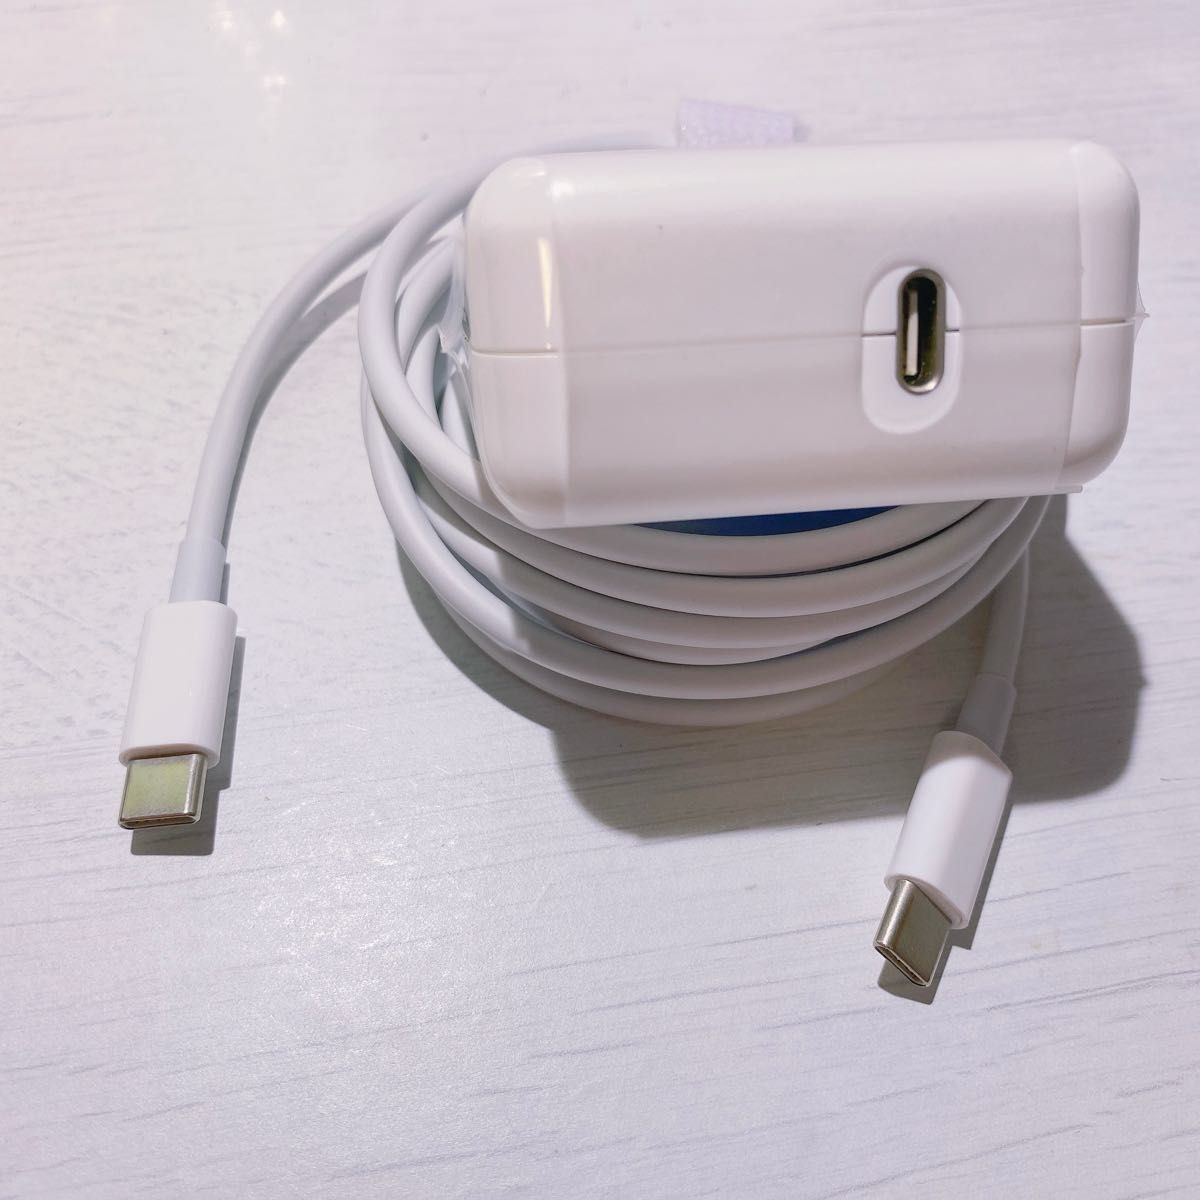 新品Type-C 29W MacBook Air 電源互換 充電器 ACアダプター(USB-C充電ケーブルあり2メートル)